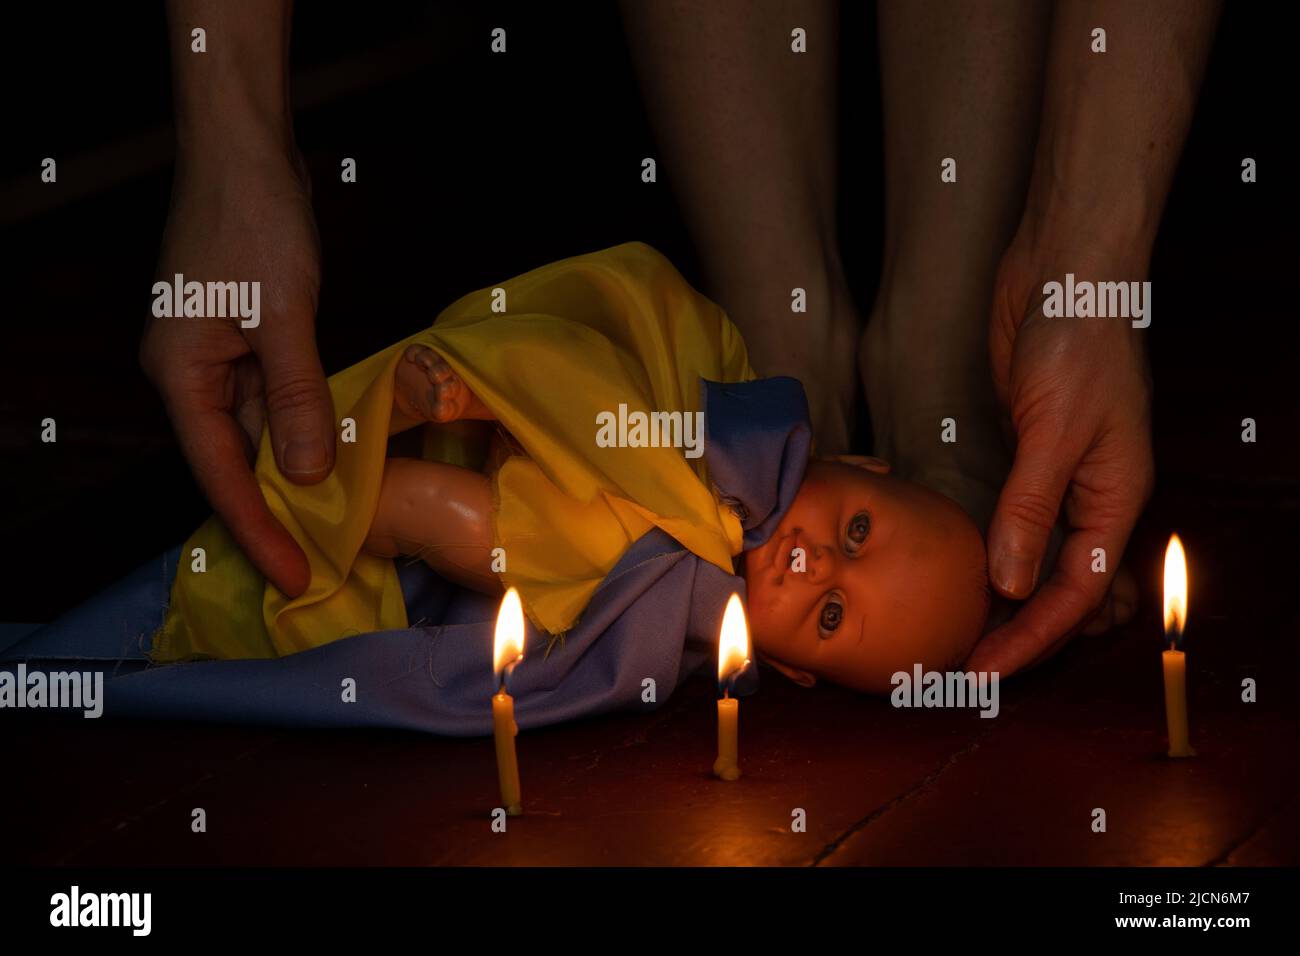 Une poupée d'enfants avec le drapeau de l'Ukraine se trouve sur le sol de la maison dans l'obscurité et à côté des jambes de la fille, la guerre en Ukraine, la mort de ch Banque D'Images